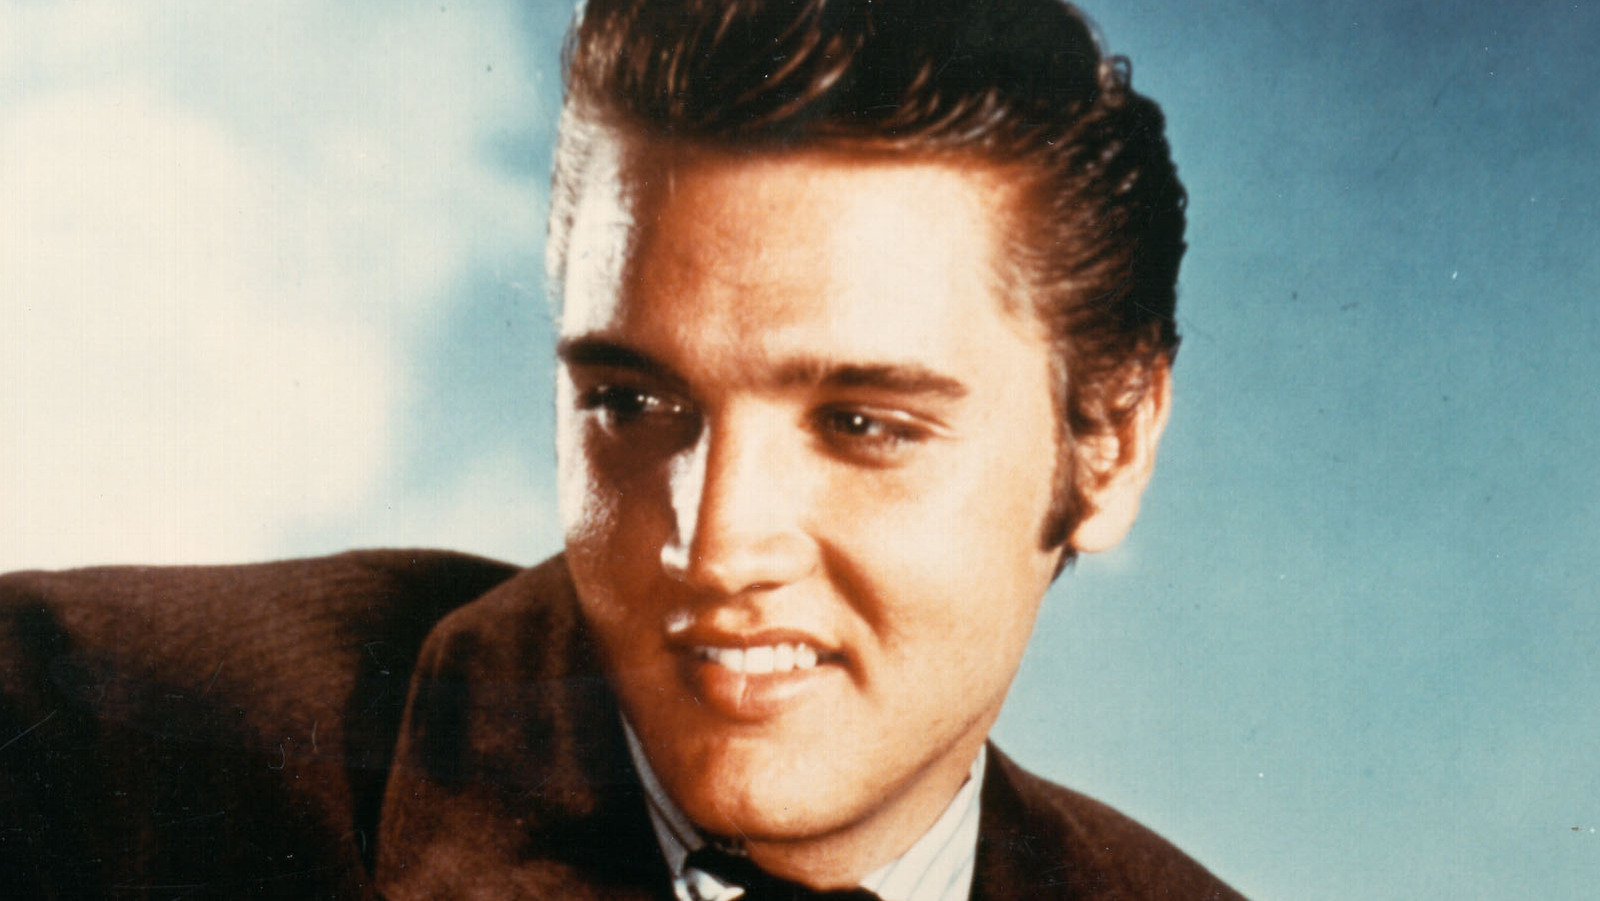 La superestrella de WWE le desea a Elvis Presley un feliz cumpleaños